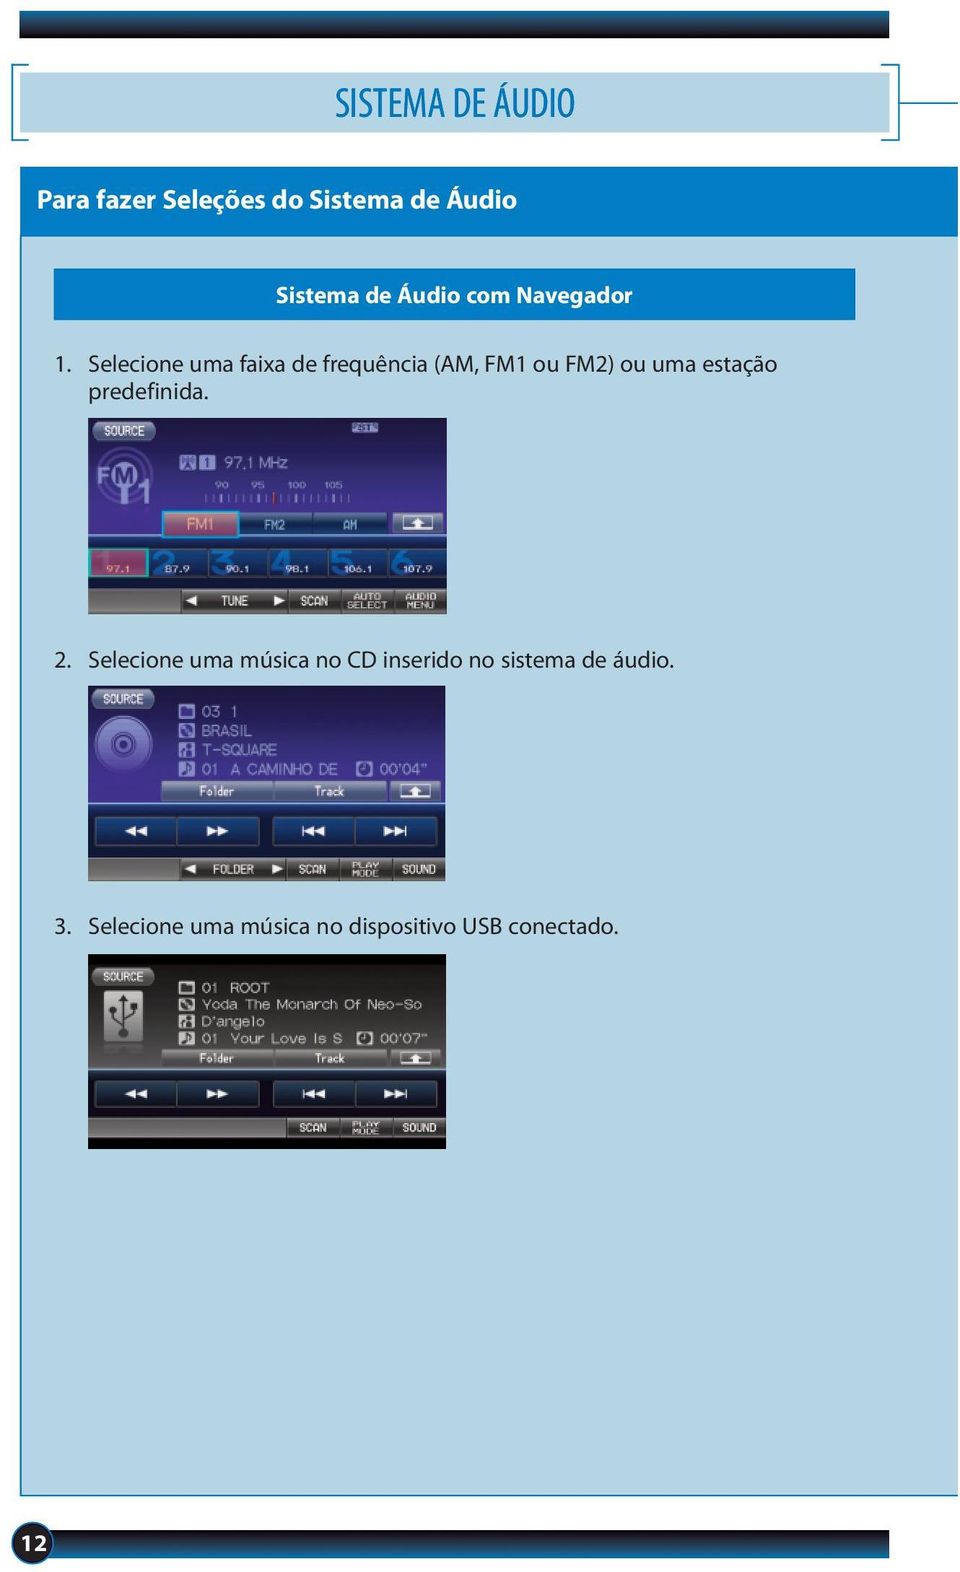 Selecione uma faixa de frequência (AM, FM1 ou FM2) ou uma estação